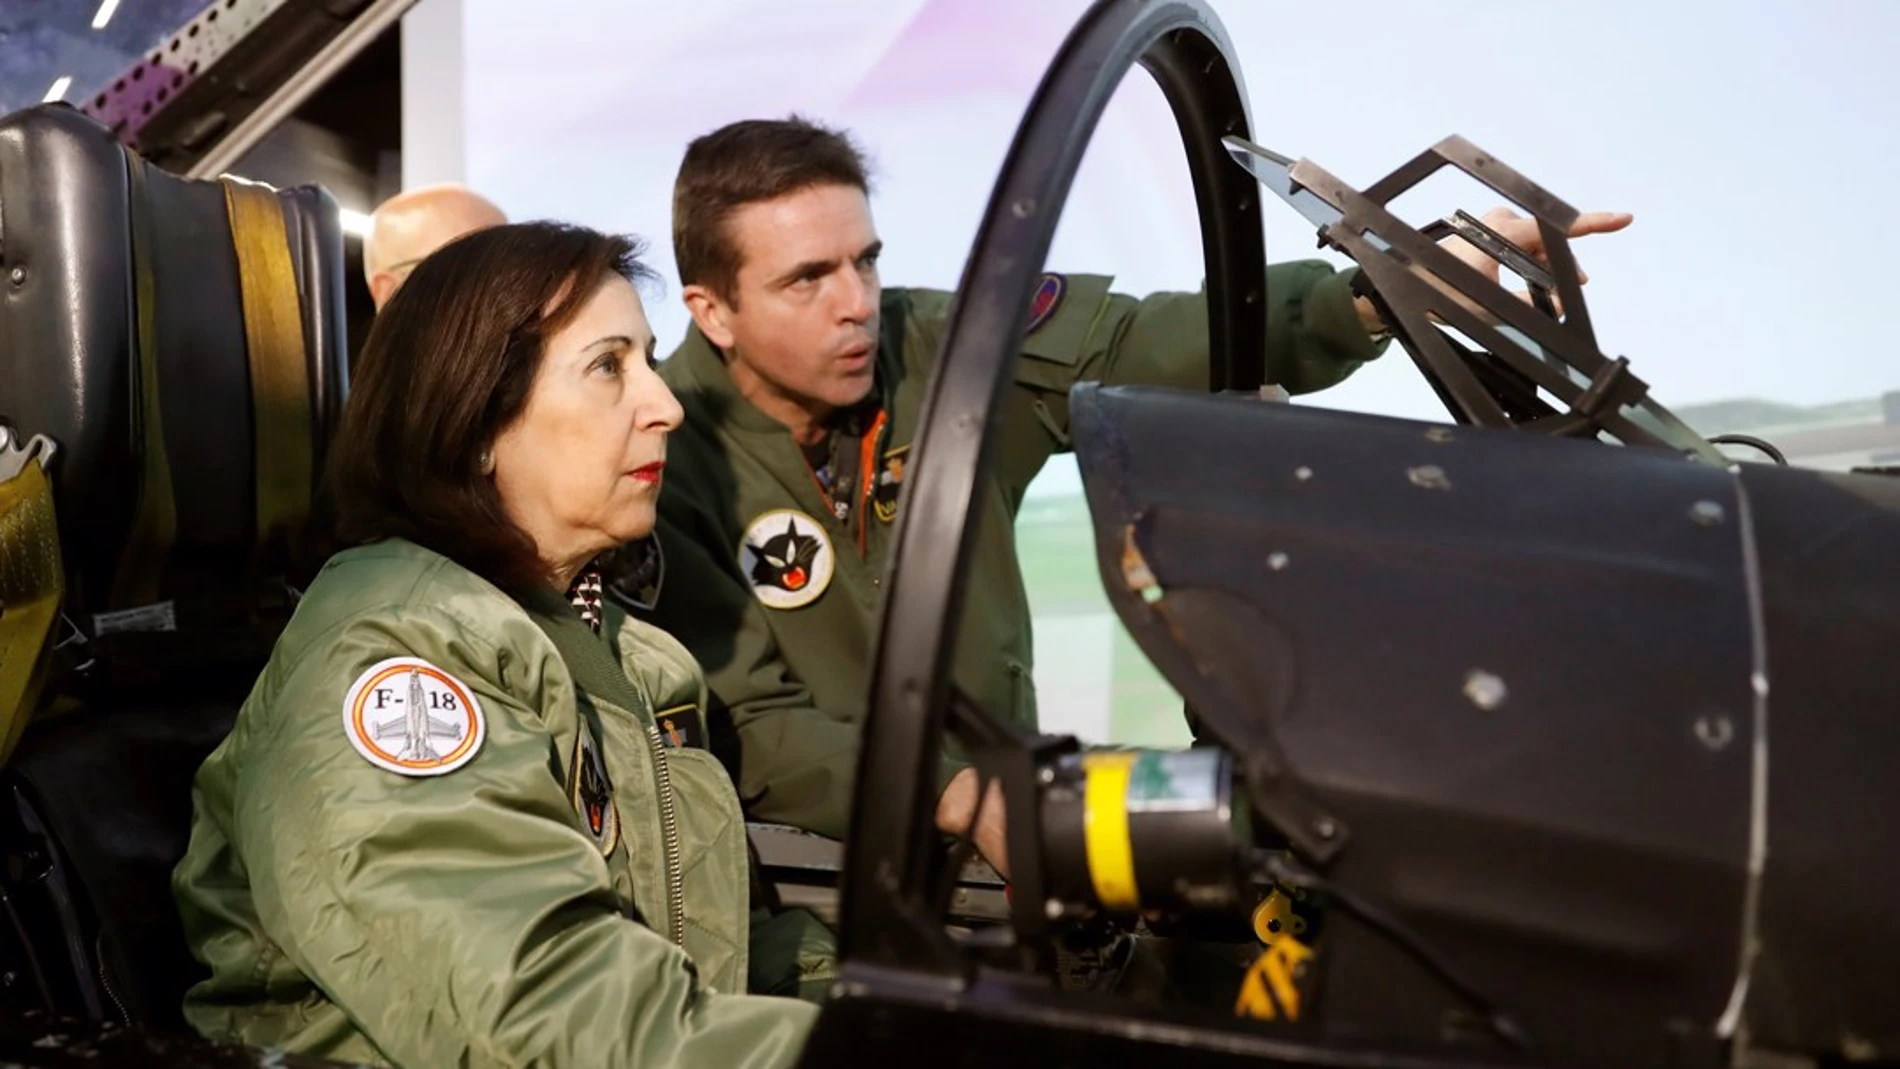  La ministra de Defensa en funciones, Margarita Robles, durante su visita este jueves la Base Aérea de Torrejón de Ardoz para conocer las características y funcionamiento del simulador C15, del Ala12, una de las unidades principales del Mando Aéreo de Combate (MACOM) del Ejército del Aire